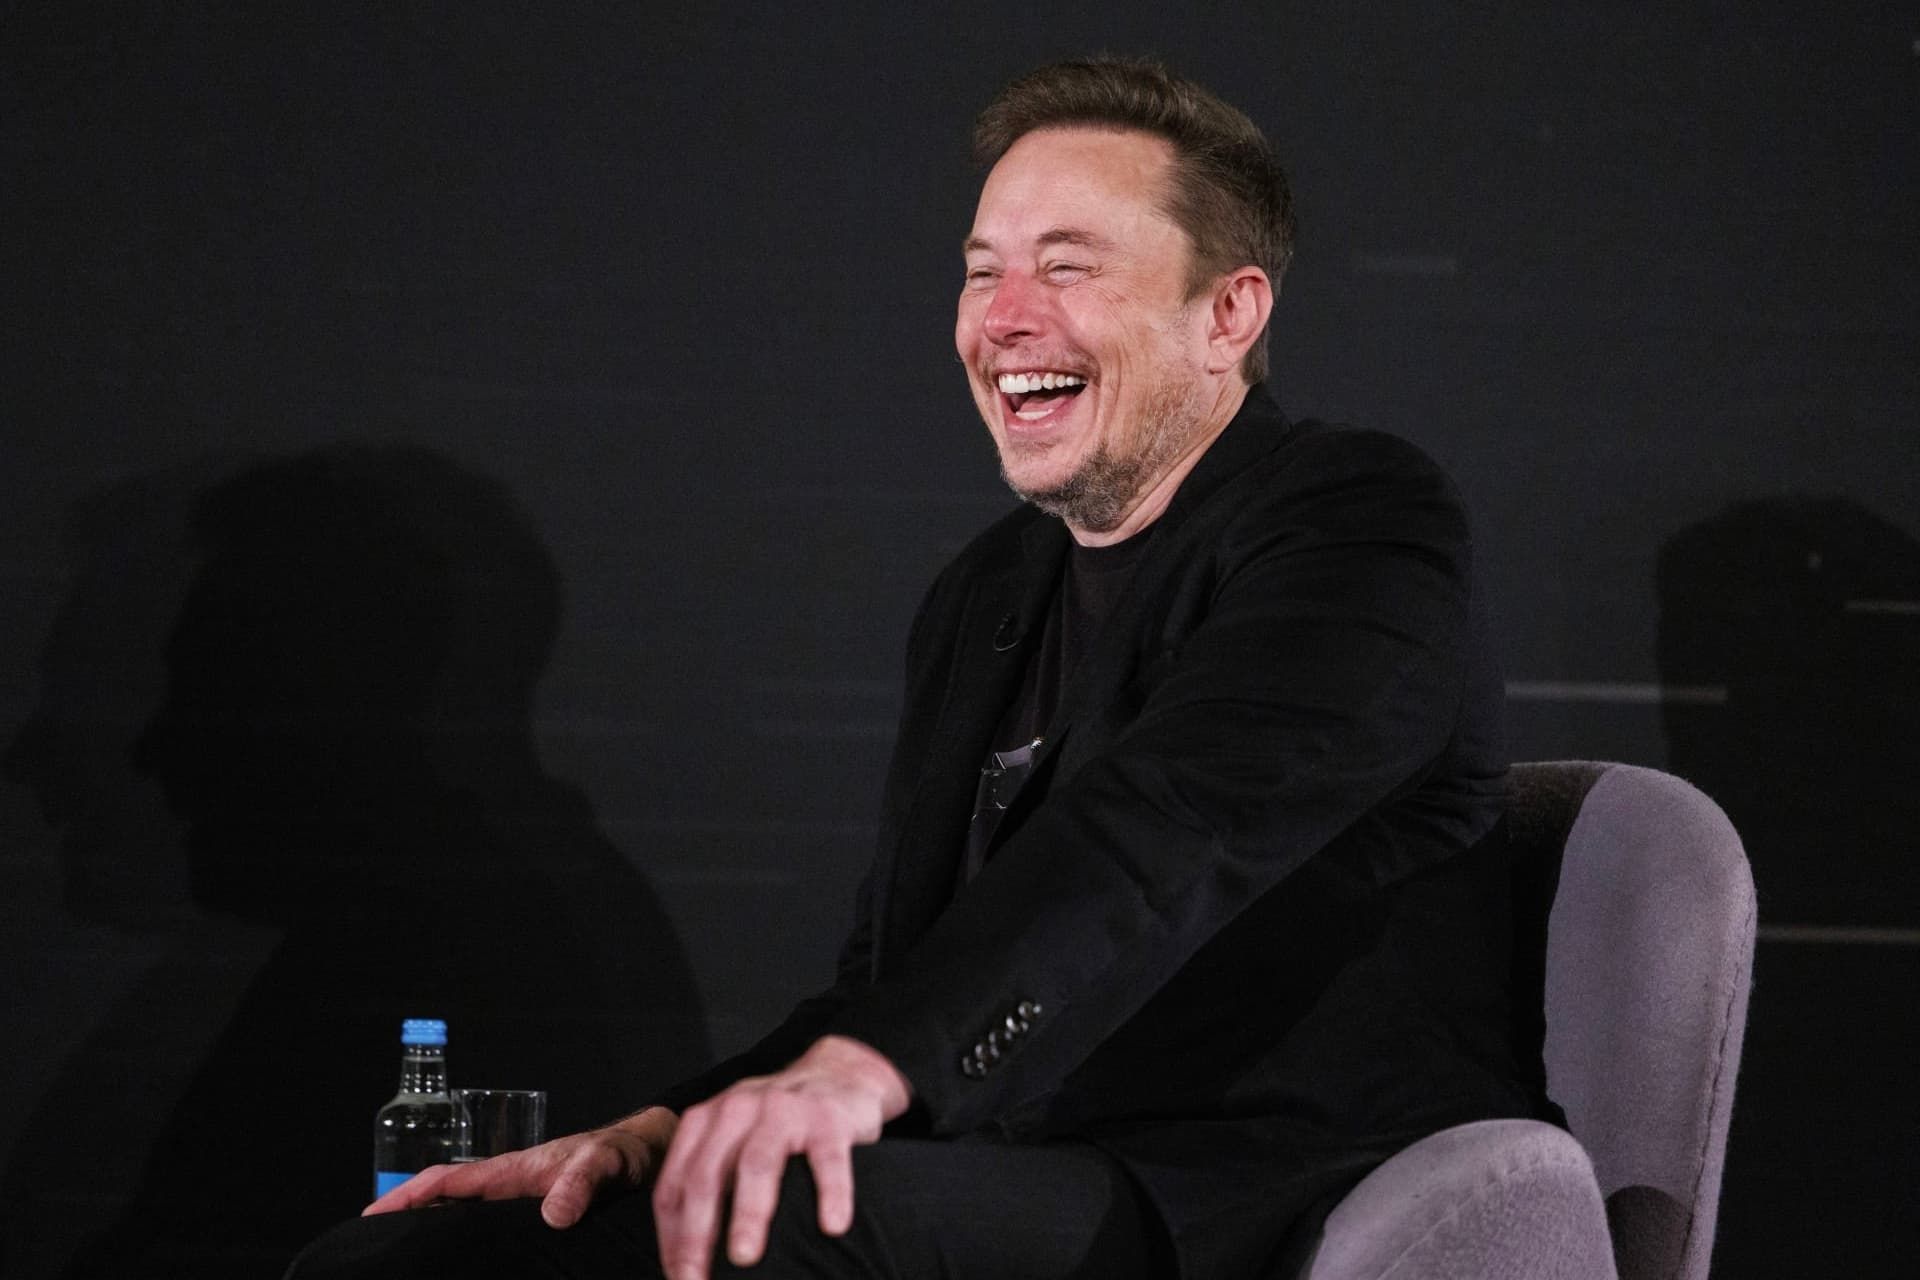 خنده ایلان ماسک / Elon Musk روی صندلی با لباس مشکی